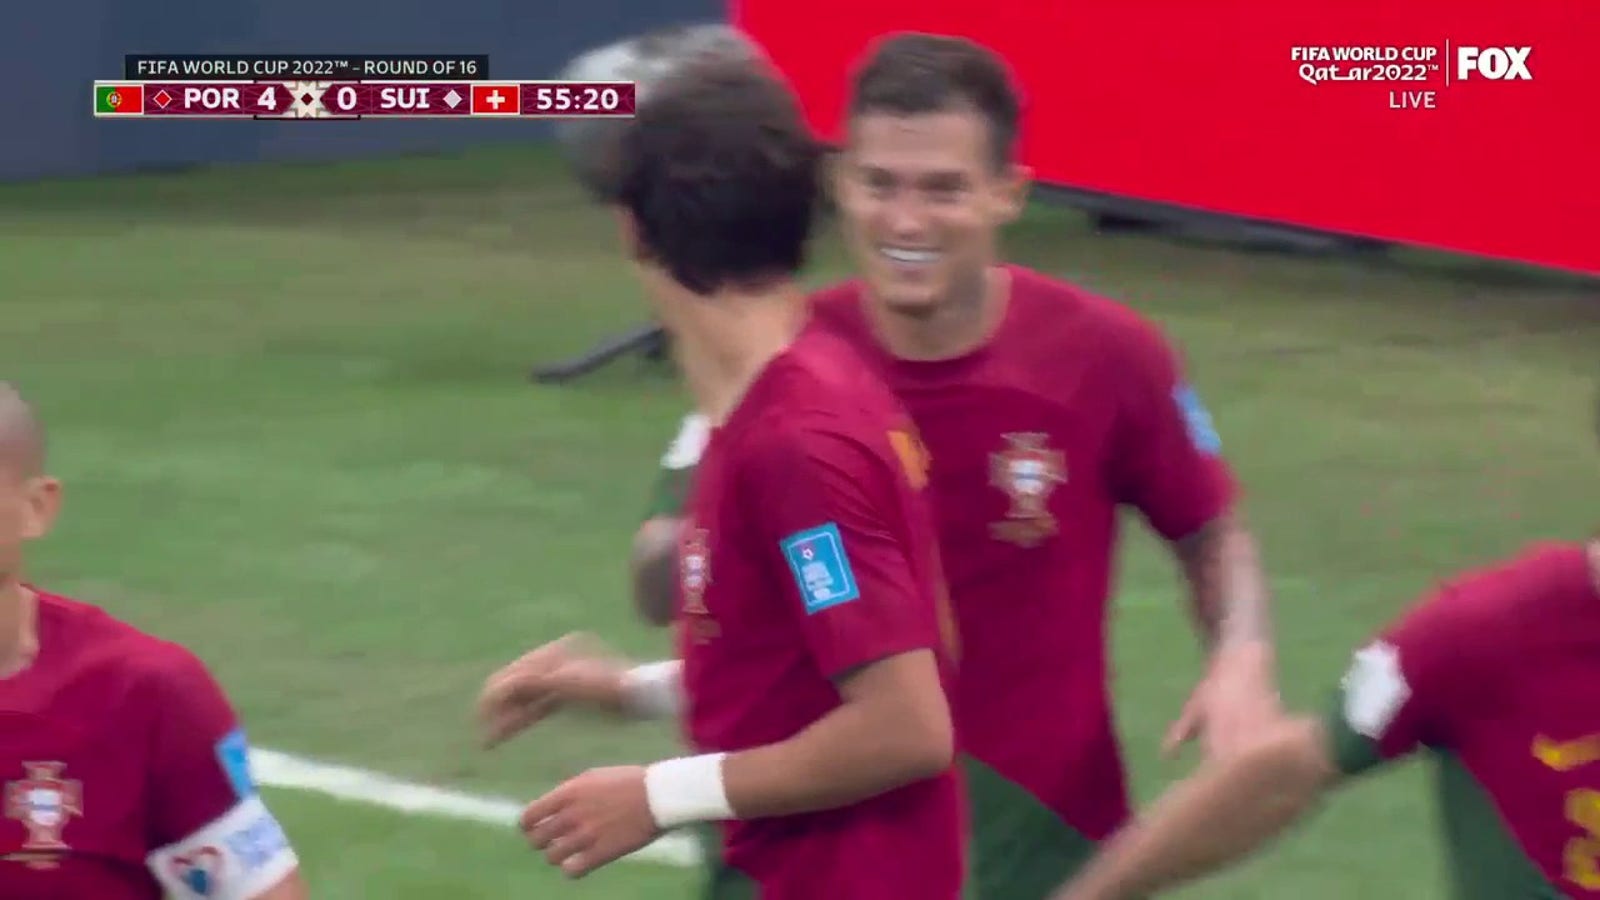 Portugal's Raphael Guerreiro scores against Switzerland in 55'